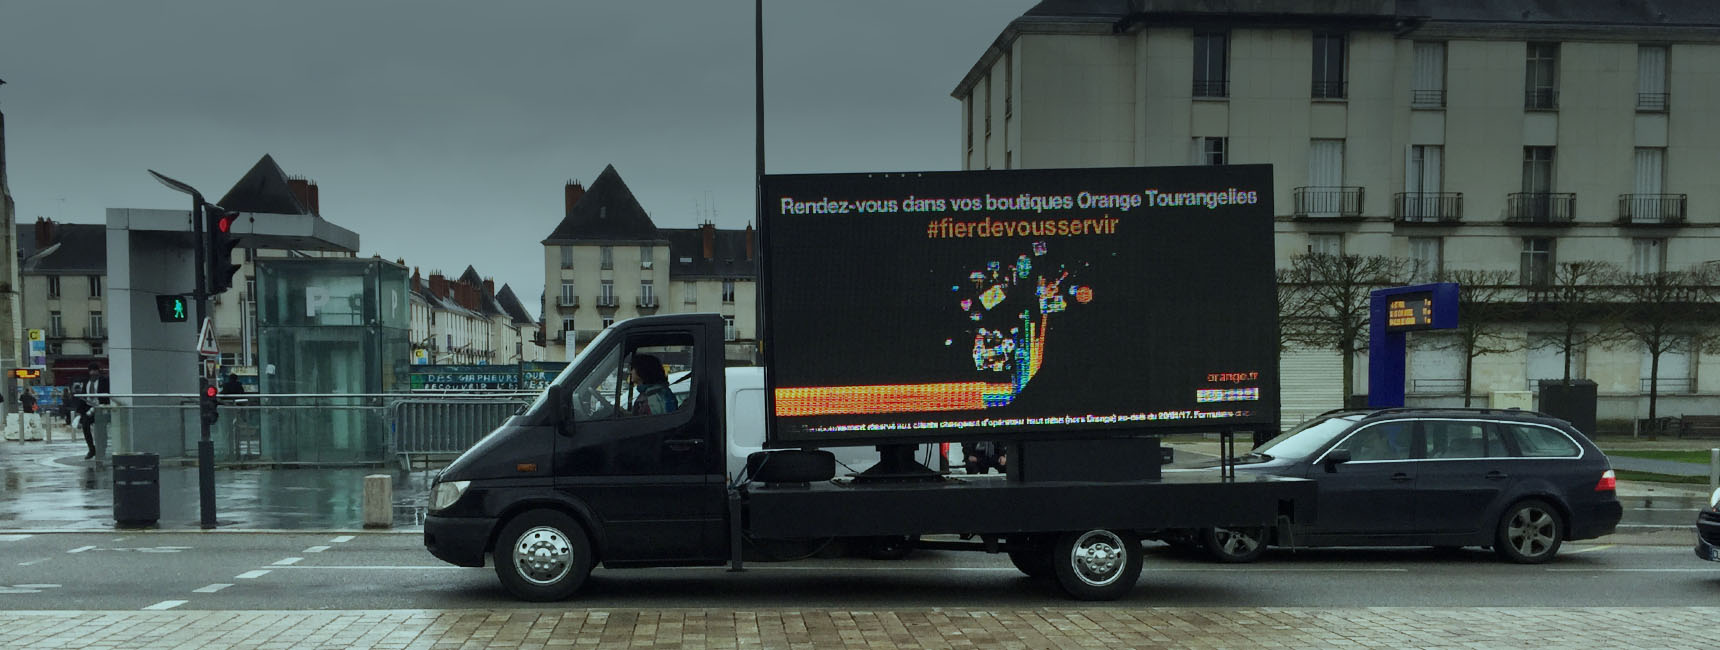 Dispositifs d'affichage mobile - Keemia Paris Agence marketing local en région Île-de-France